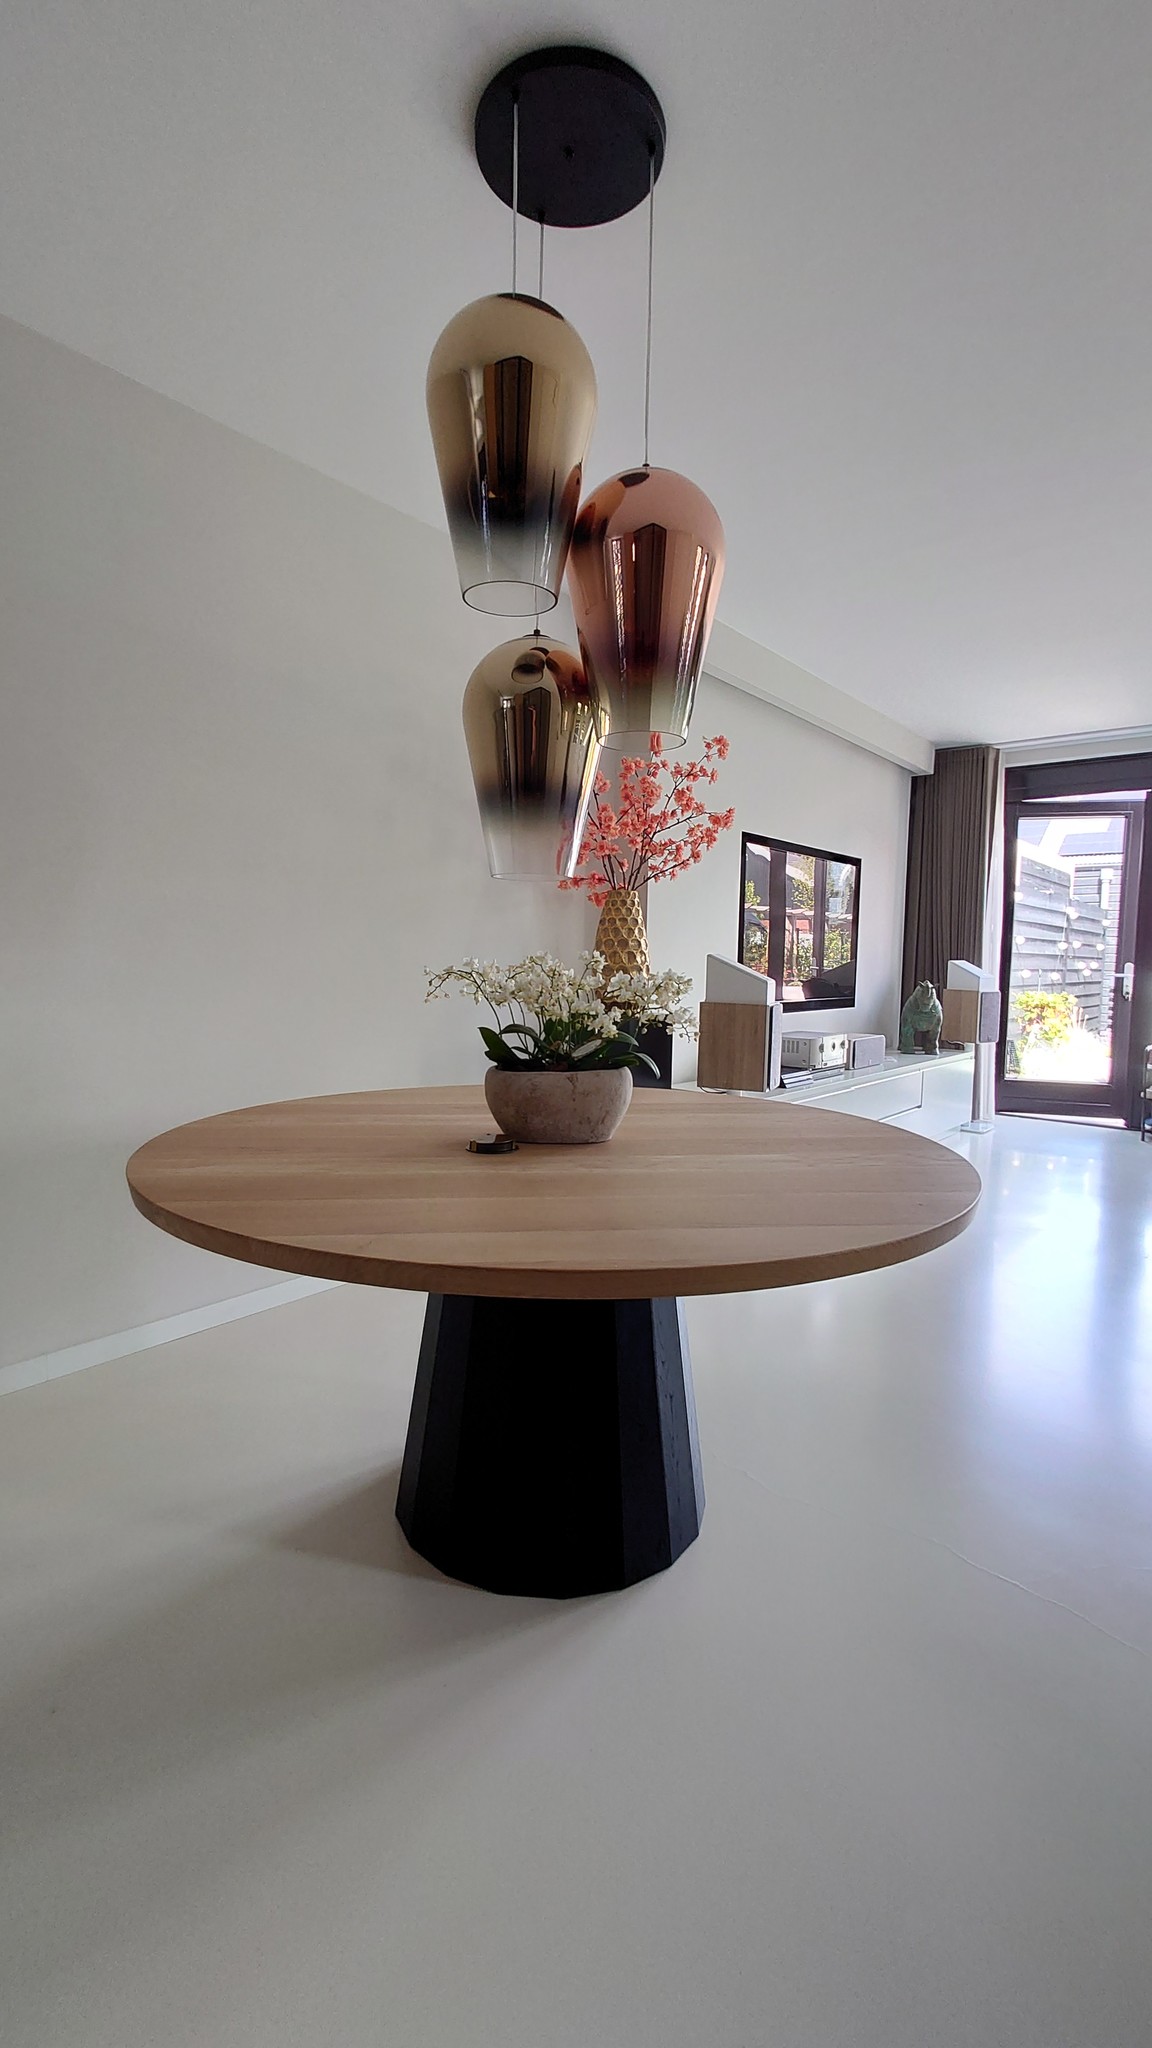 Ronde houtentafel met zwarte houten tafelpoot kopen? - Houtentafelshop.nl